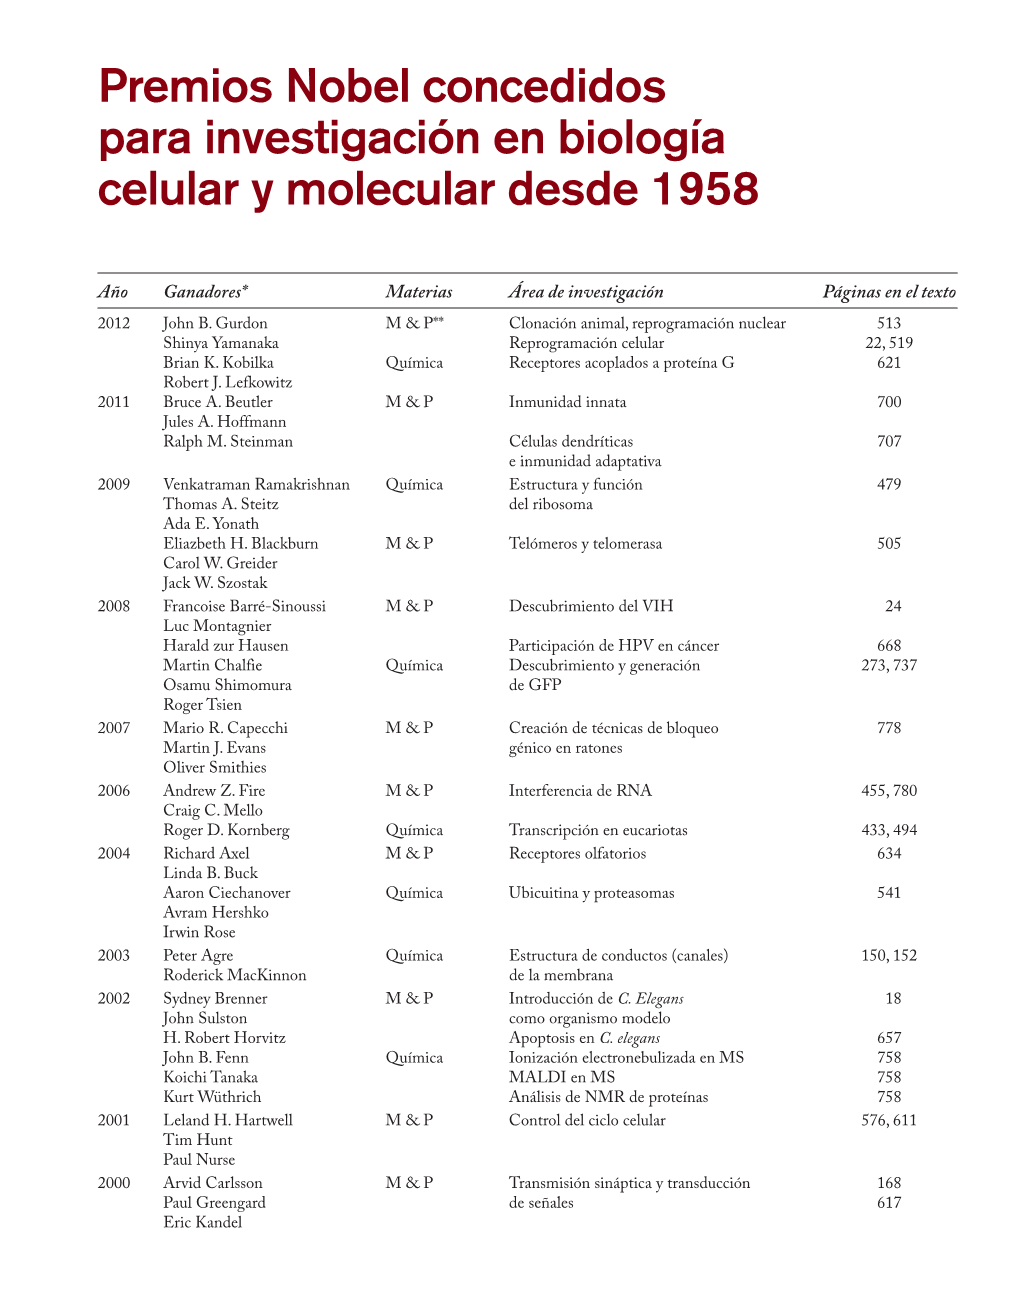 Premios Nobel Concedidos Para Investigación En Biología Celular Y Molecular Desde 1958